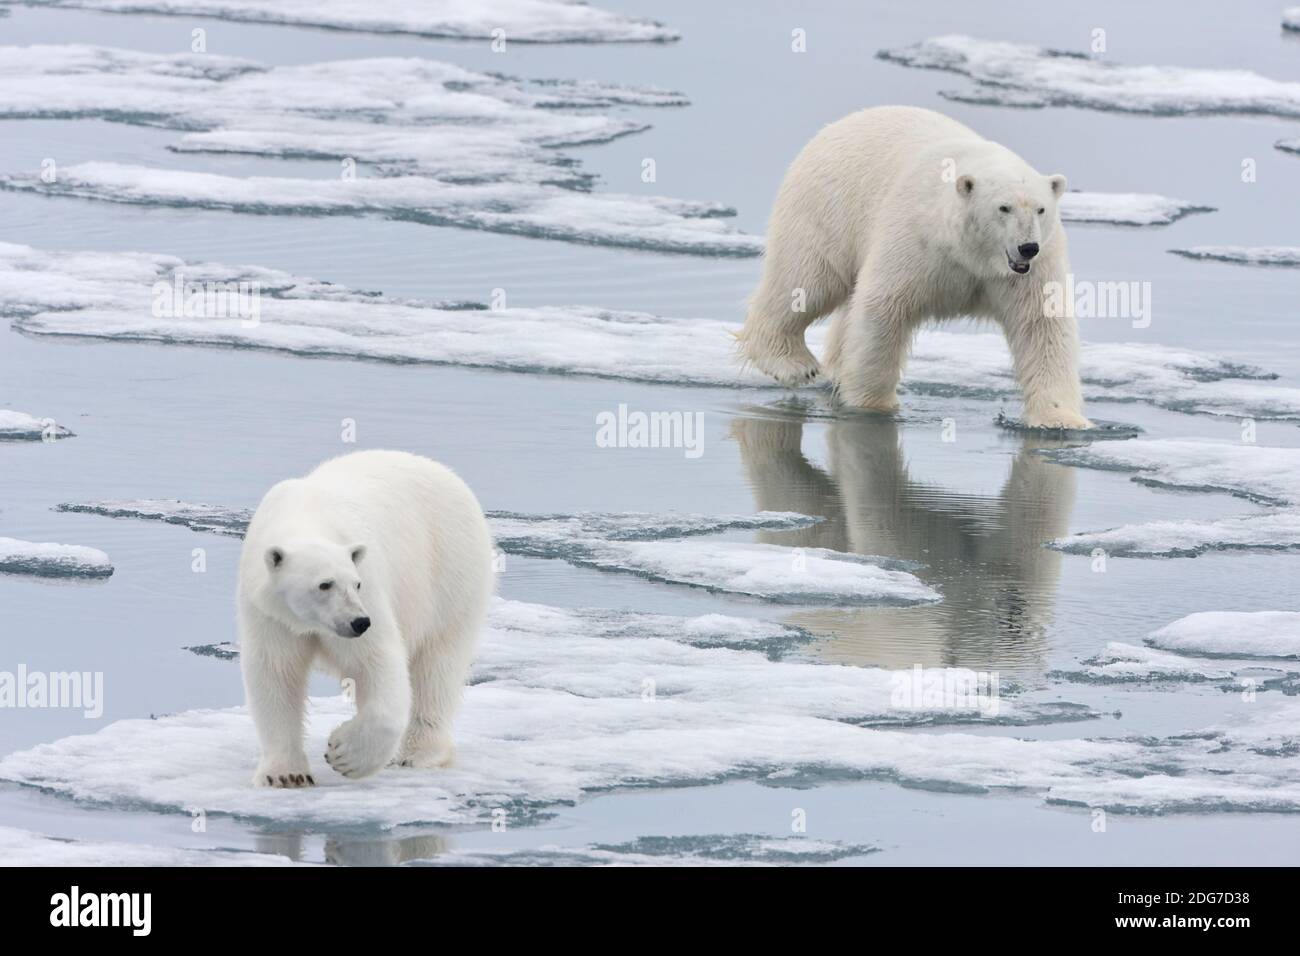 Deux ours polaires sur glaces, Spitzberg, Norvège Banque D'Images